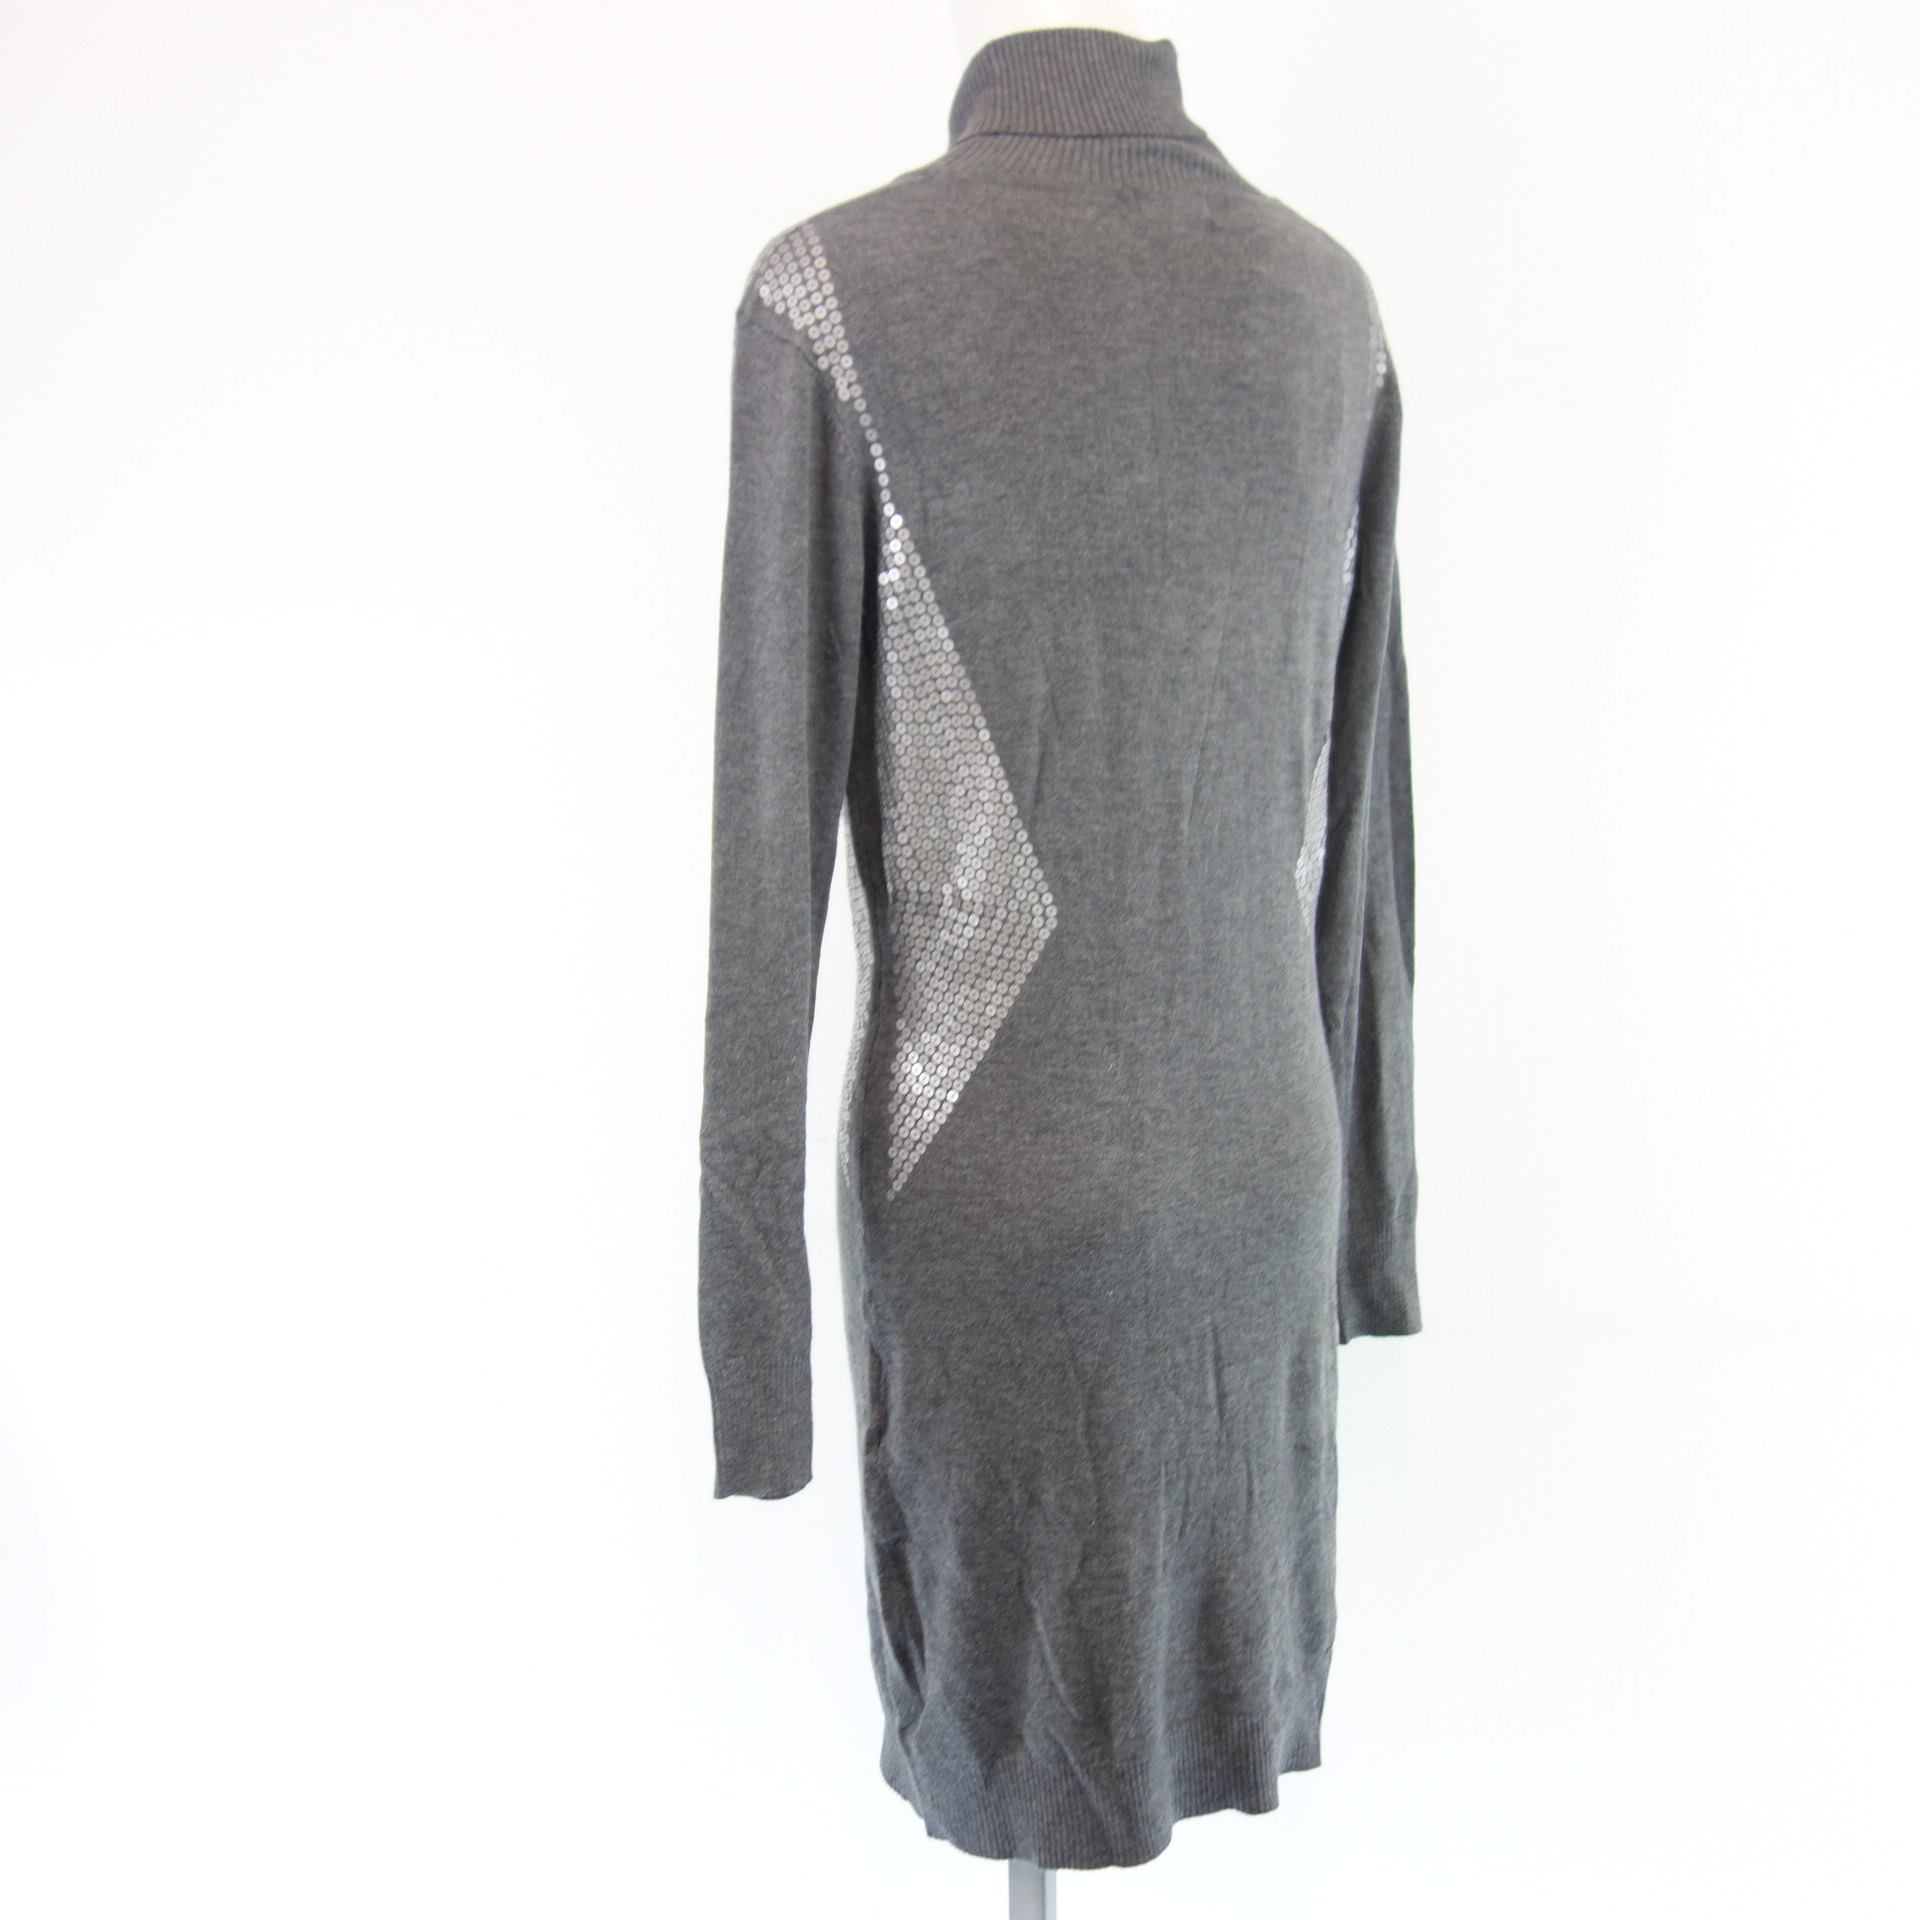 MALVIN Damen Midi Strick Kleid Strickkleid Grau Pailletten Größe 38